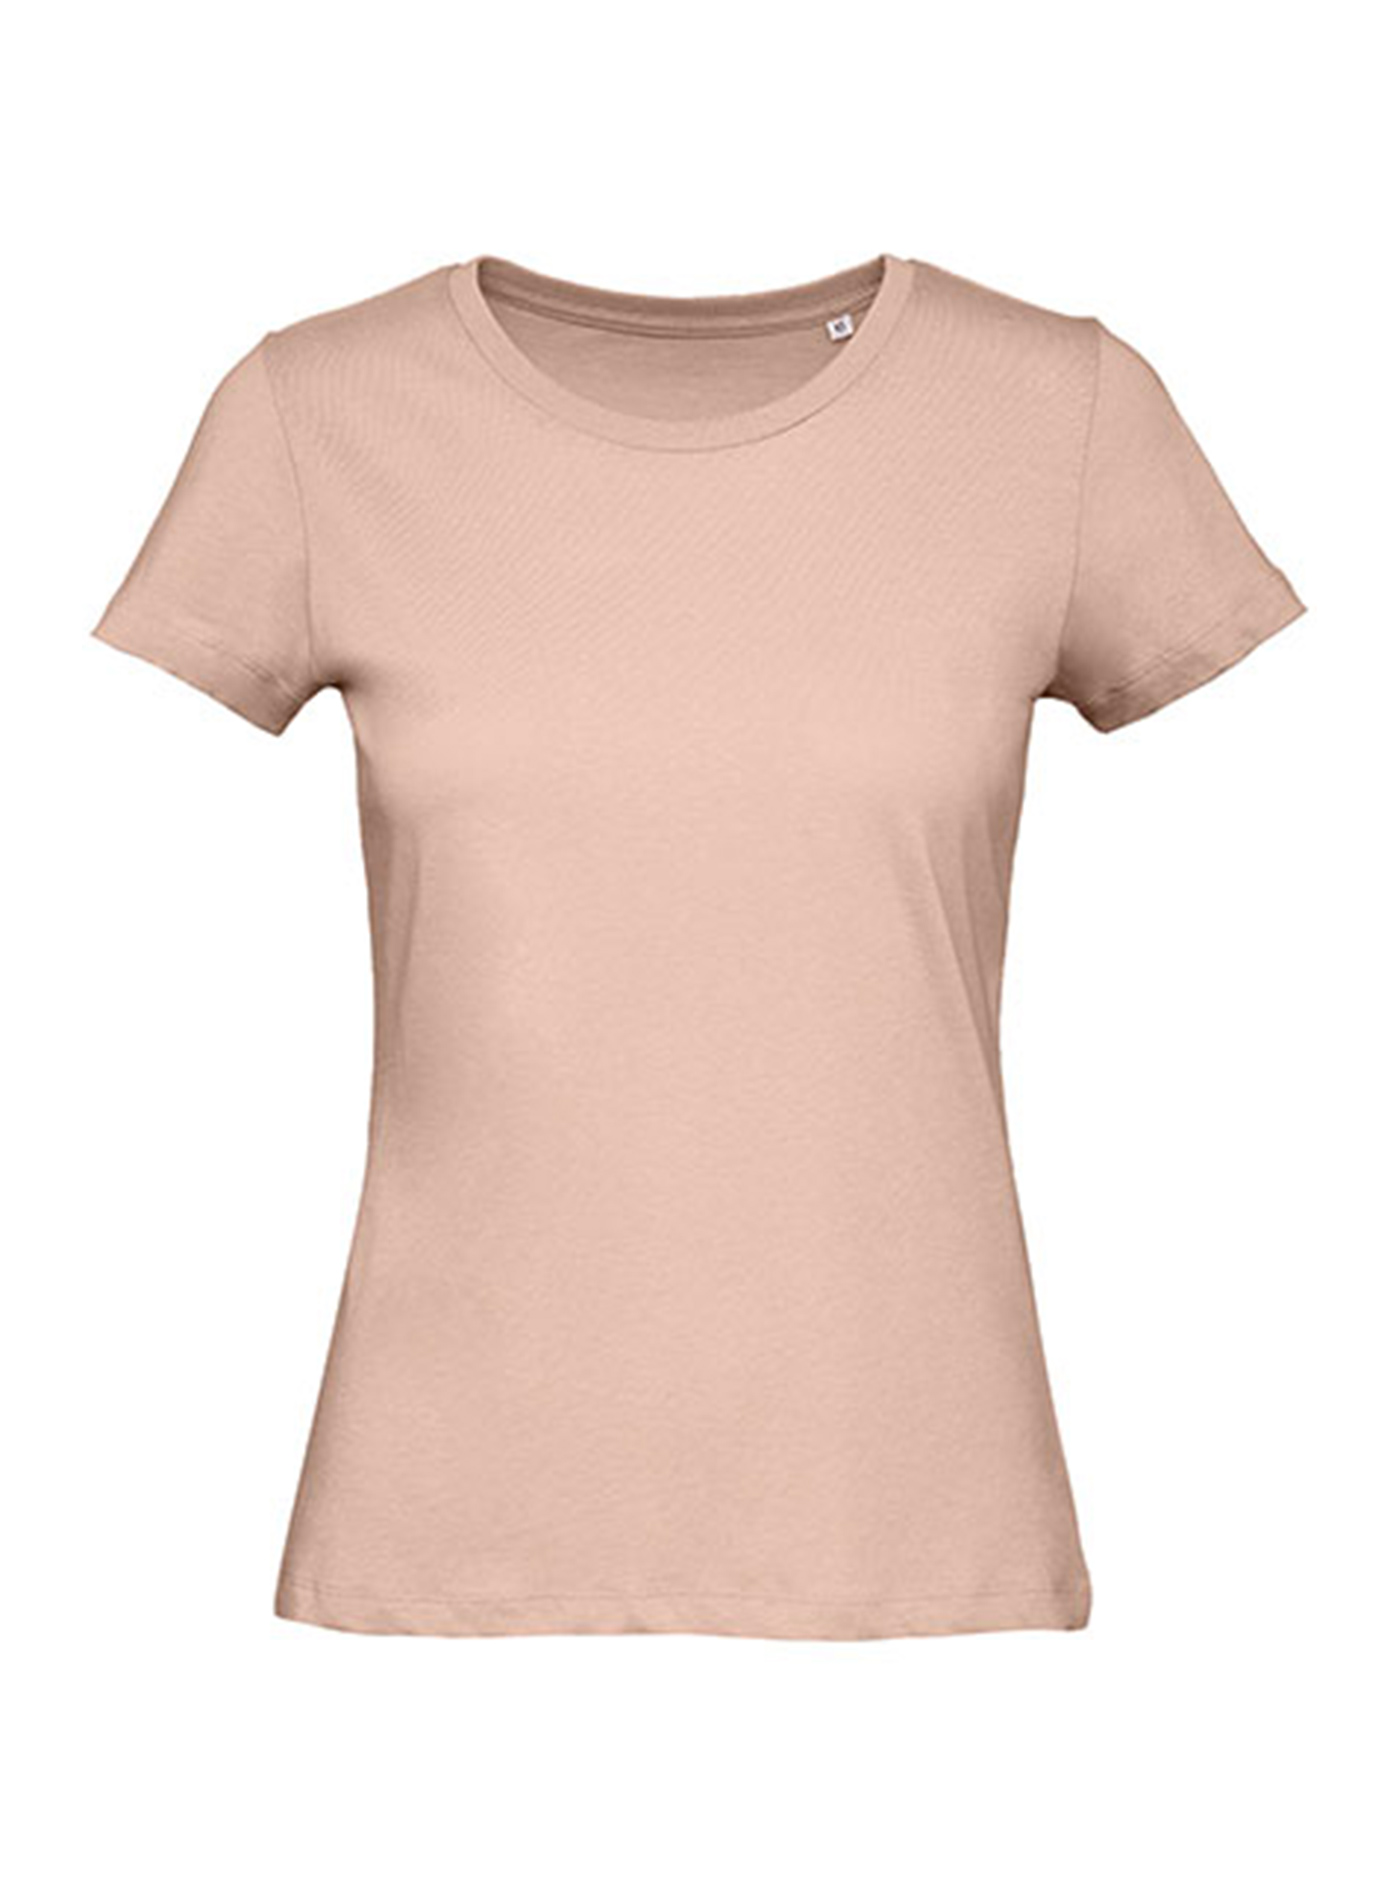 Dámské tričko B&C Collection Inspire - Bledě růžová XXL